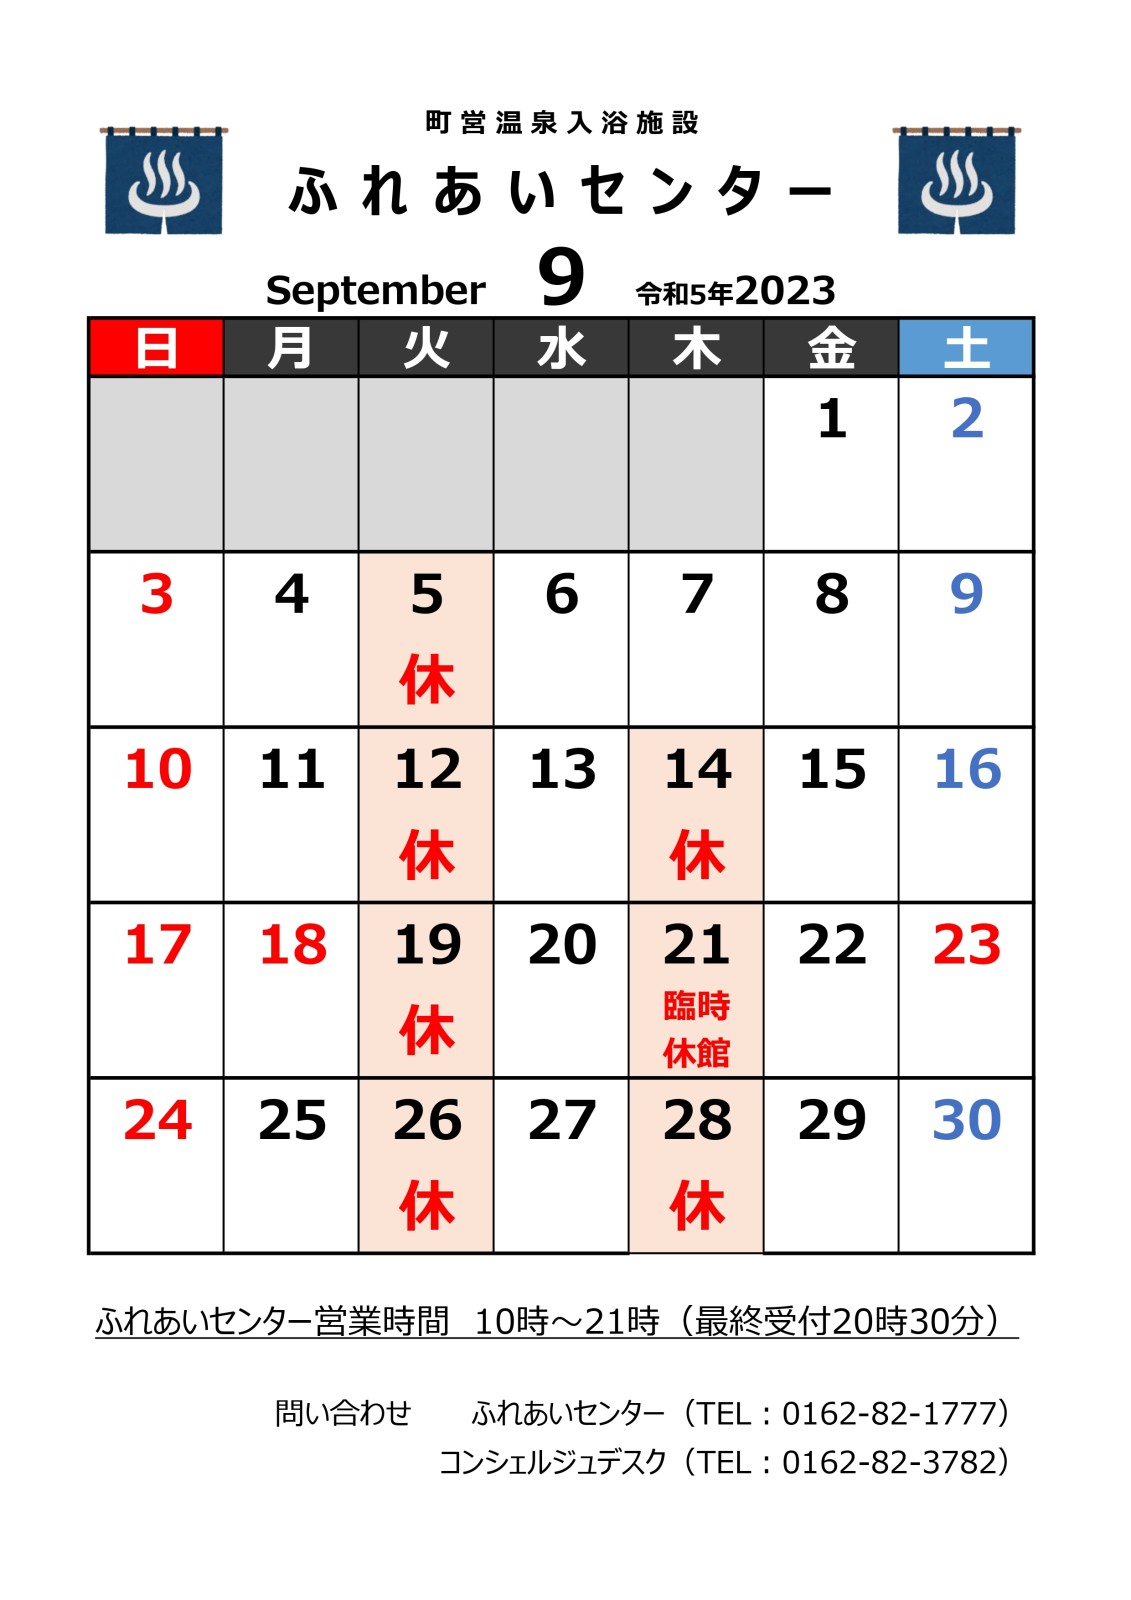 【ふれあいセンター】9月の営業について ※9/15更新